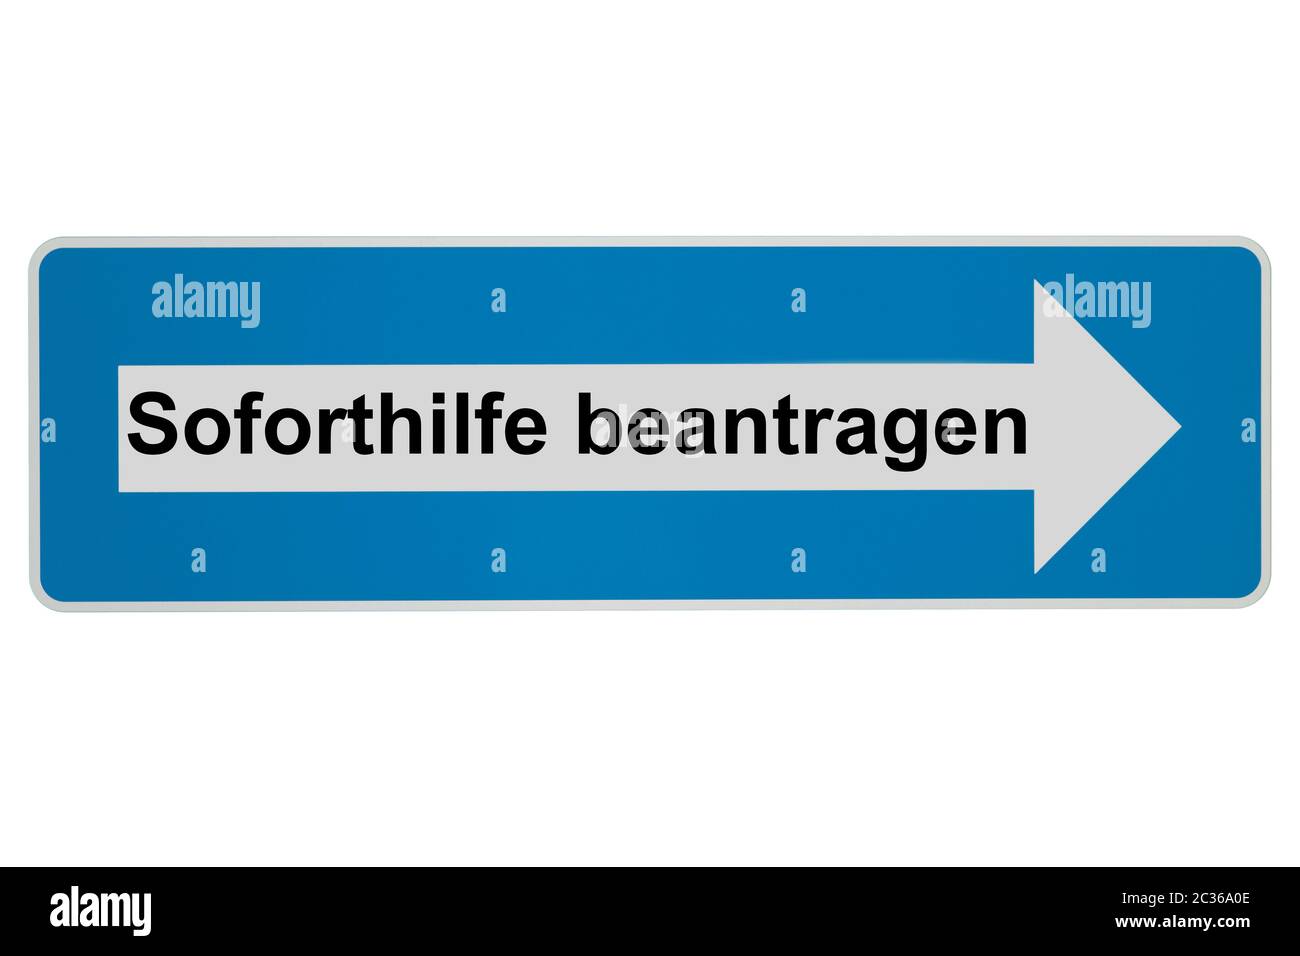 Concept: Soforsilfe beantragen en langue allemande signifie sécurité économique - Arrow Road Sign on white background Banque D'Images